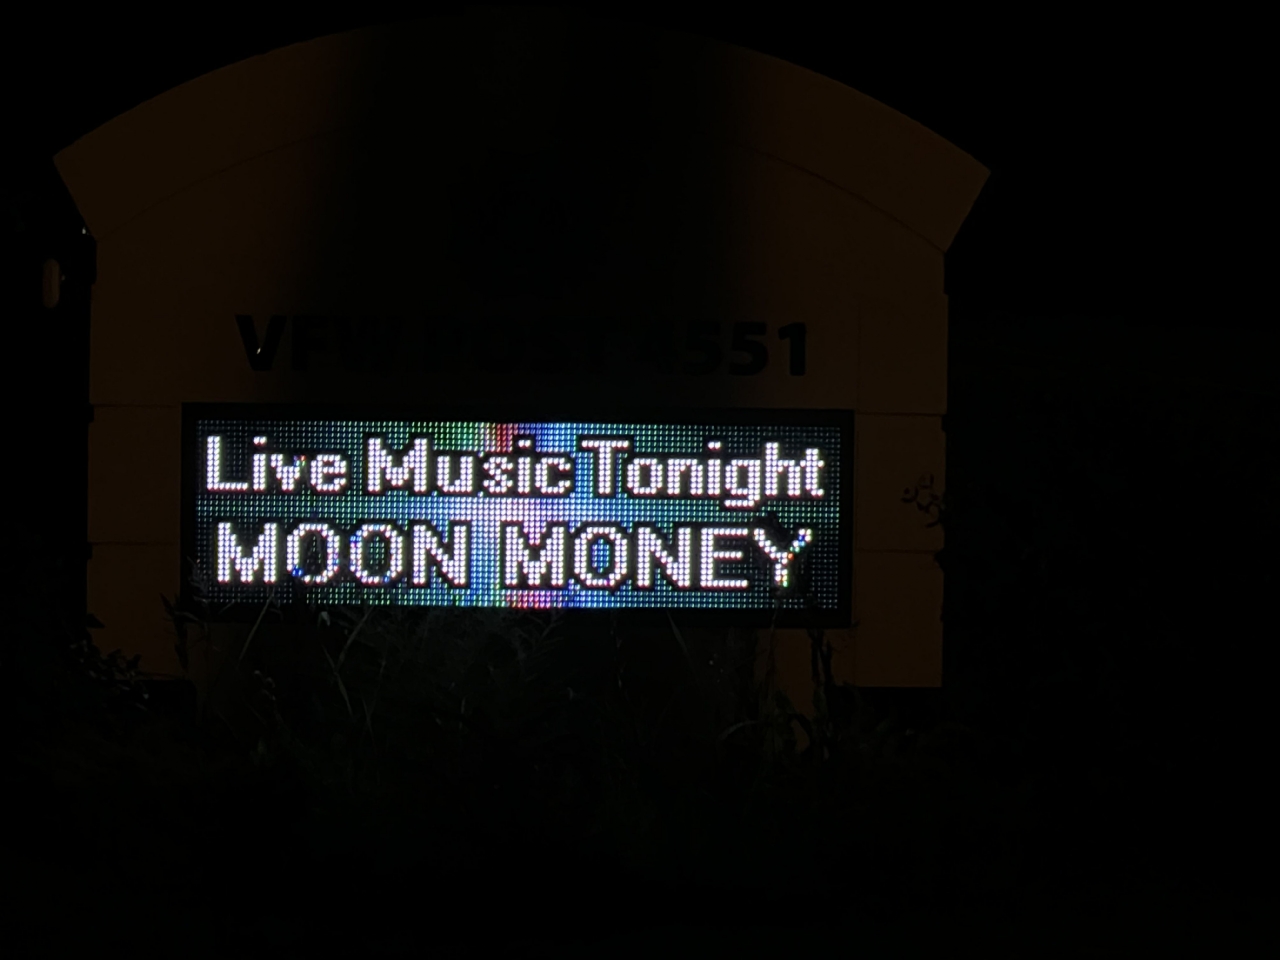 September 9th, Moon Money, 